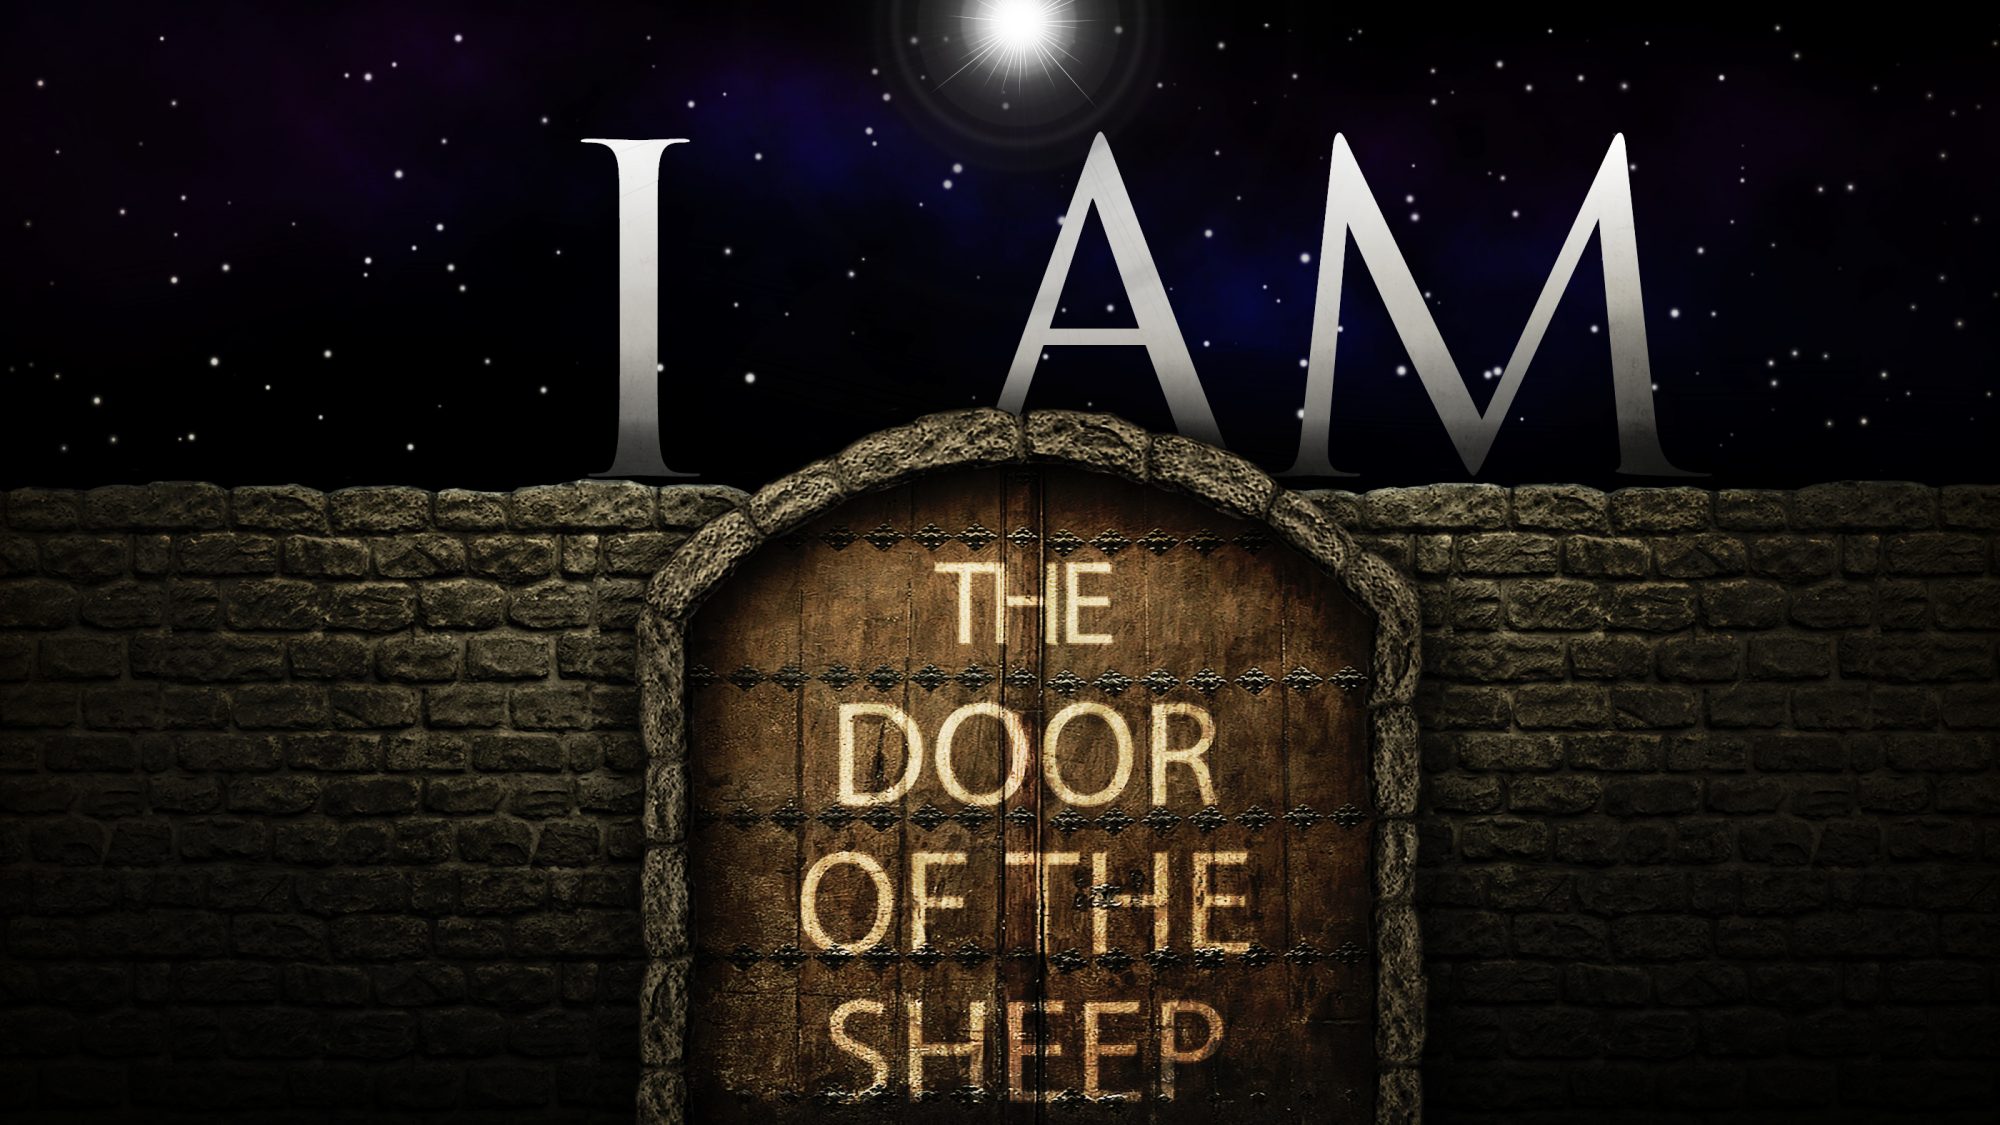 I AM the door